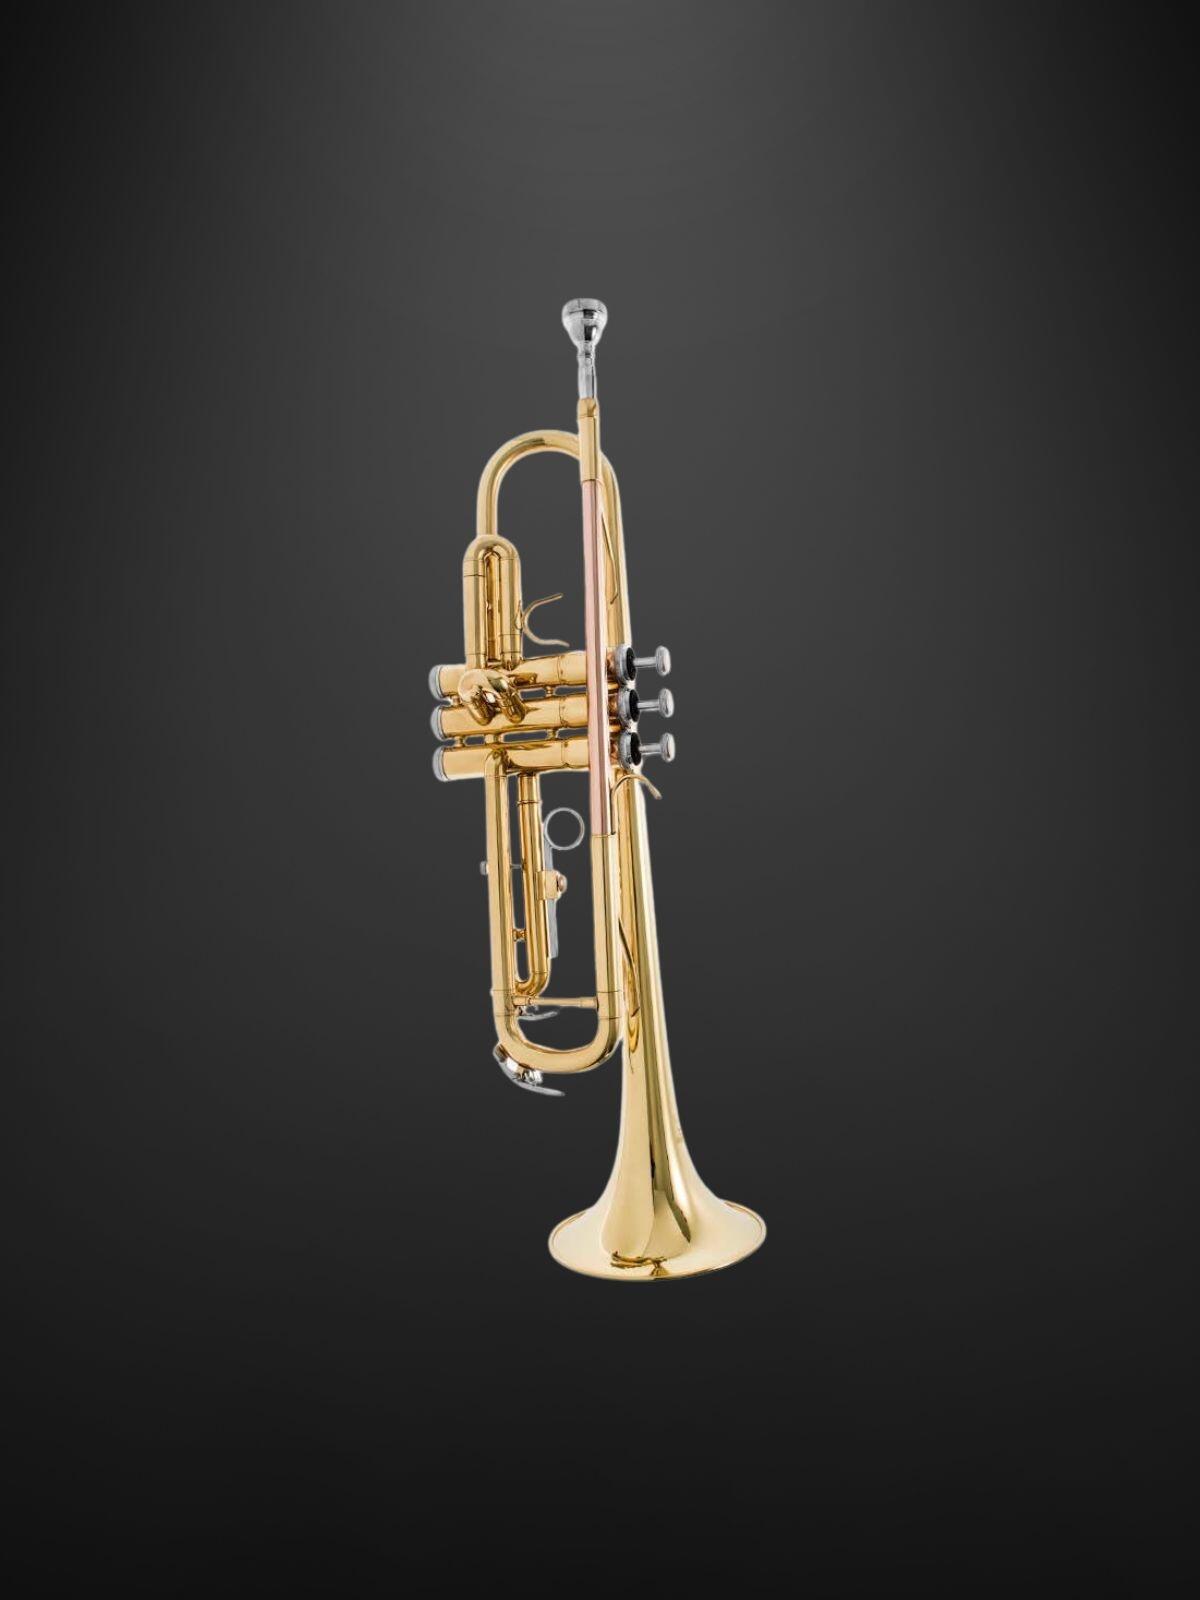 Comprar Trompete - a partir de R$1.231,80 - Marcão Shop